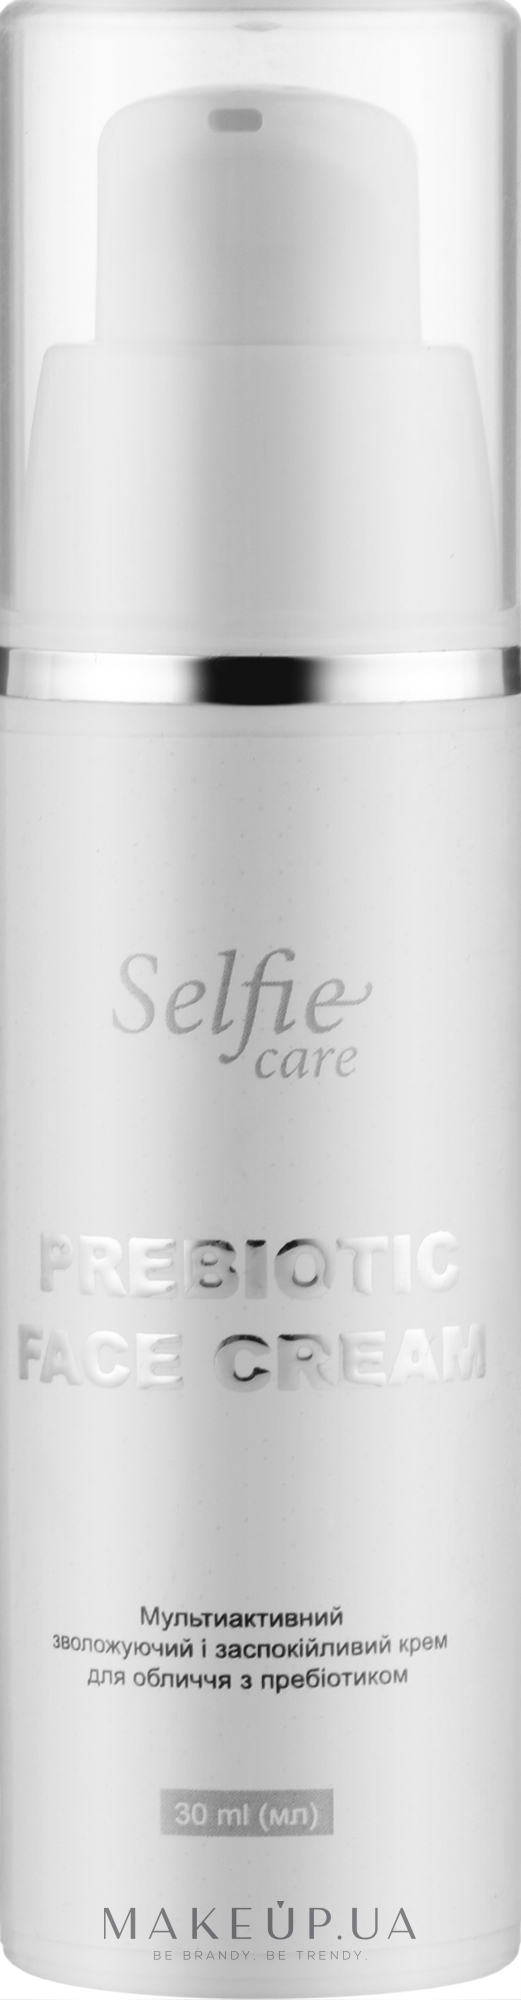 Заспокійливий і зволожувальний денний крем для обличчя з пробіотиками - Selfie Care Prebiotic Face Cream — фото 30ml